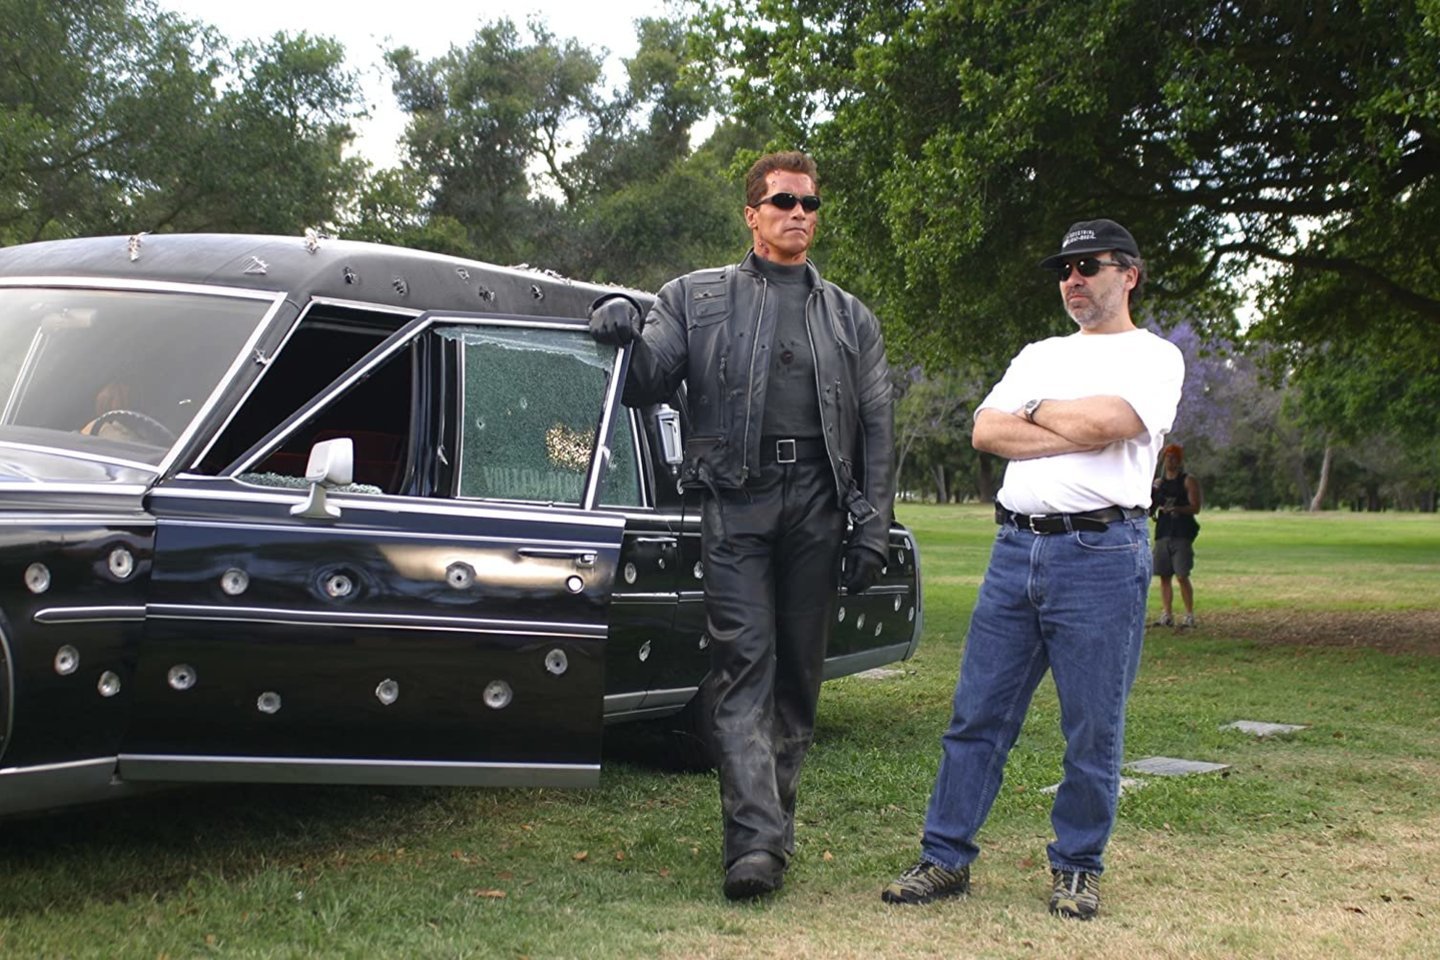 A.Schwarzeneggerį išgarsino Terminatoriaus vaidmuo.<br>imdb.com nuotr.